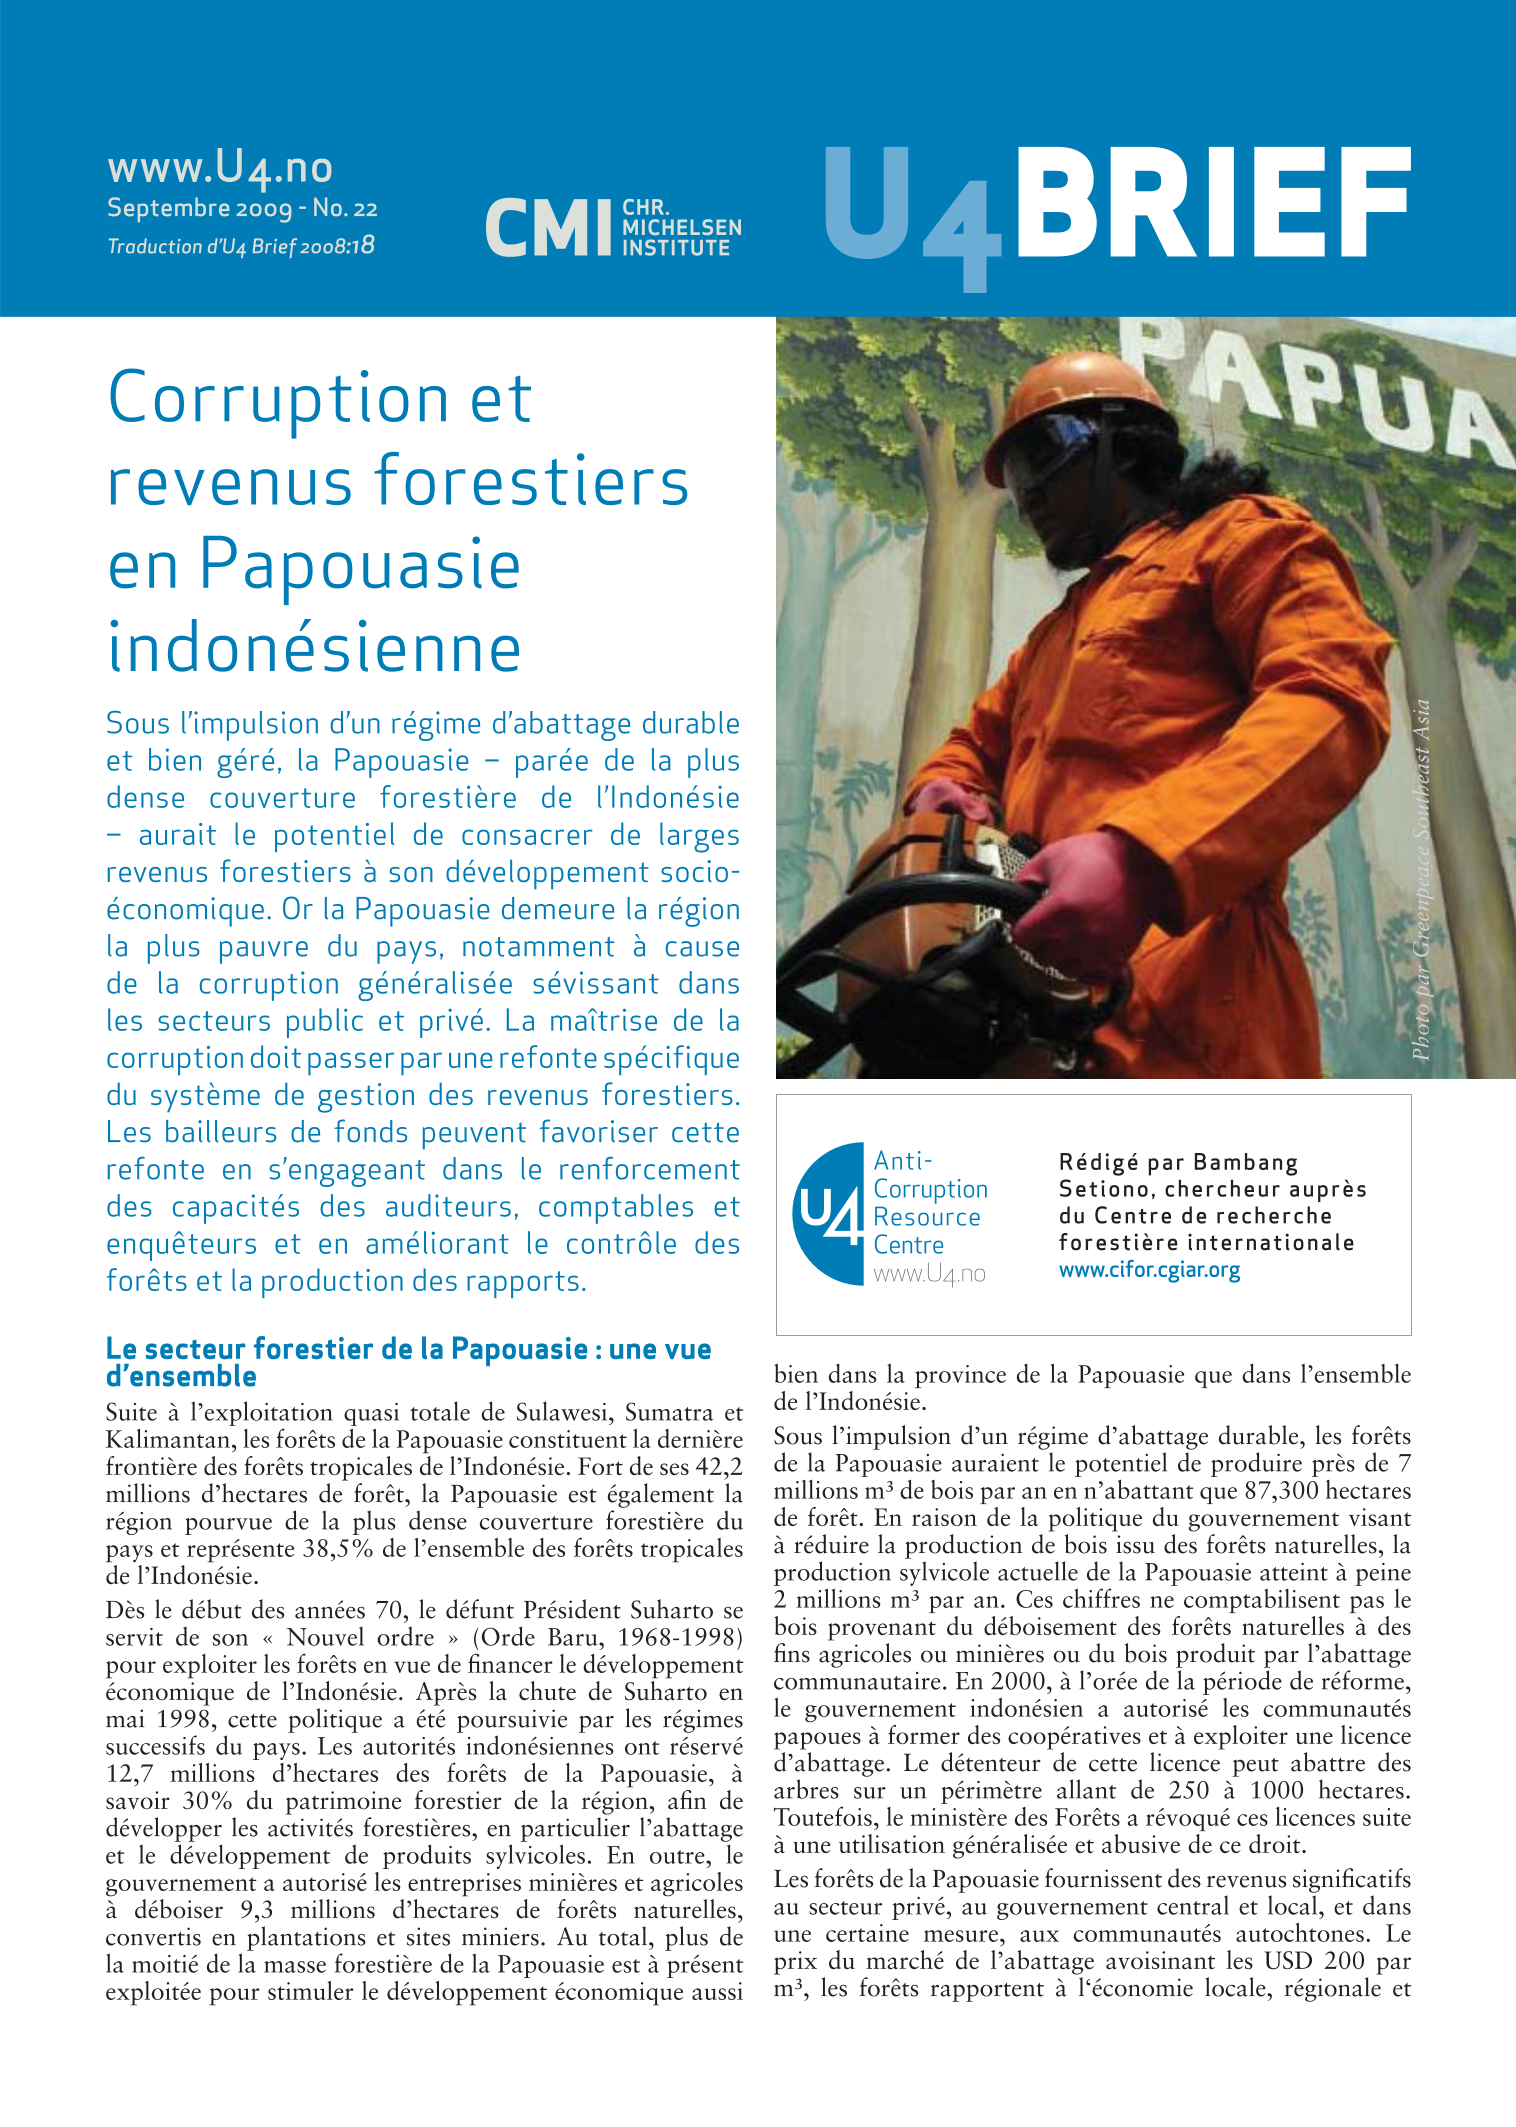 Corruption et revenus forestiers en Papouasie indonésienne